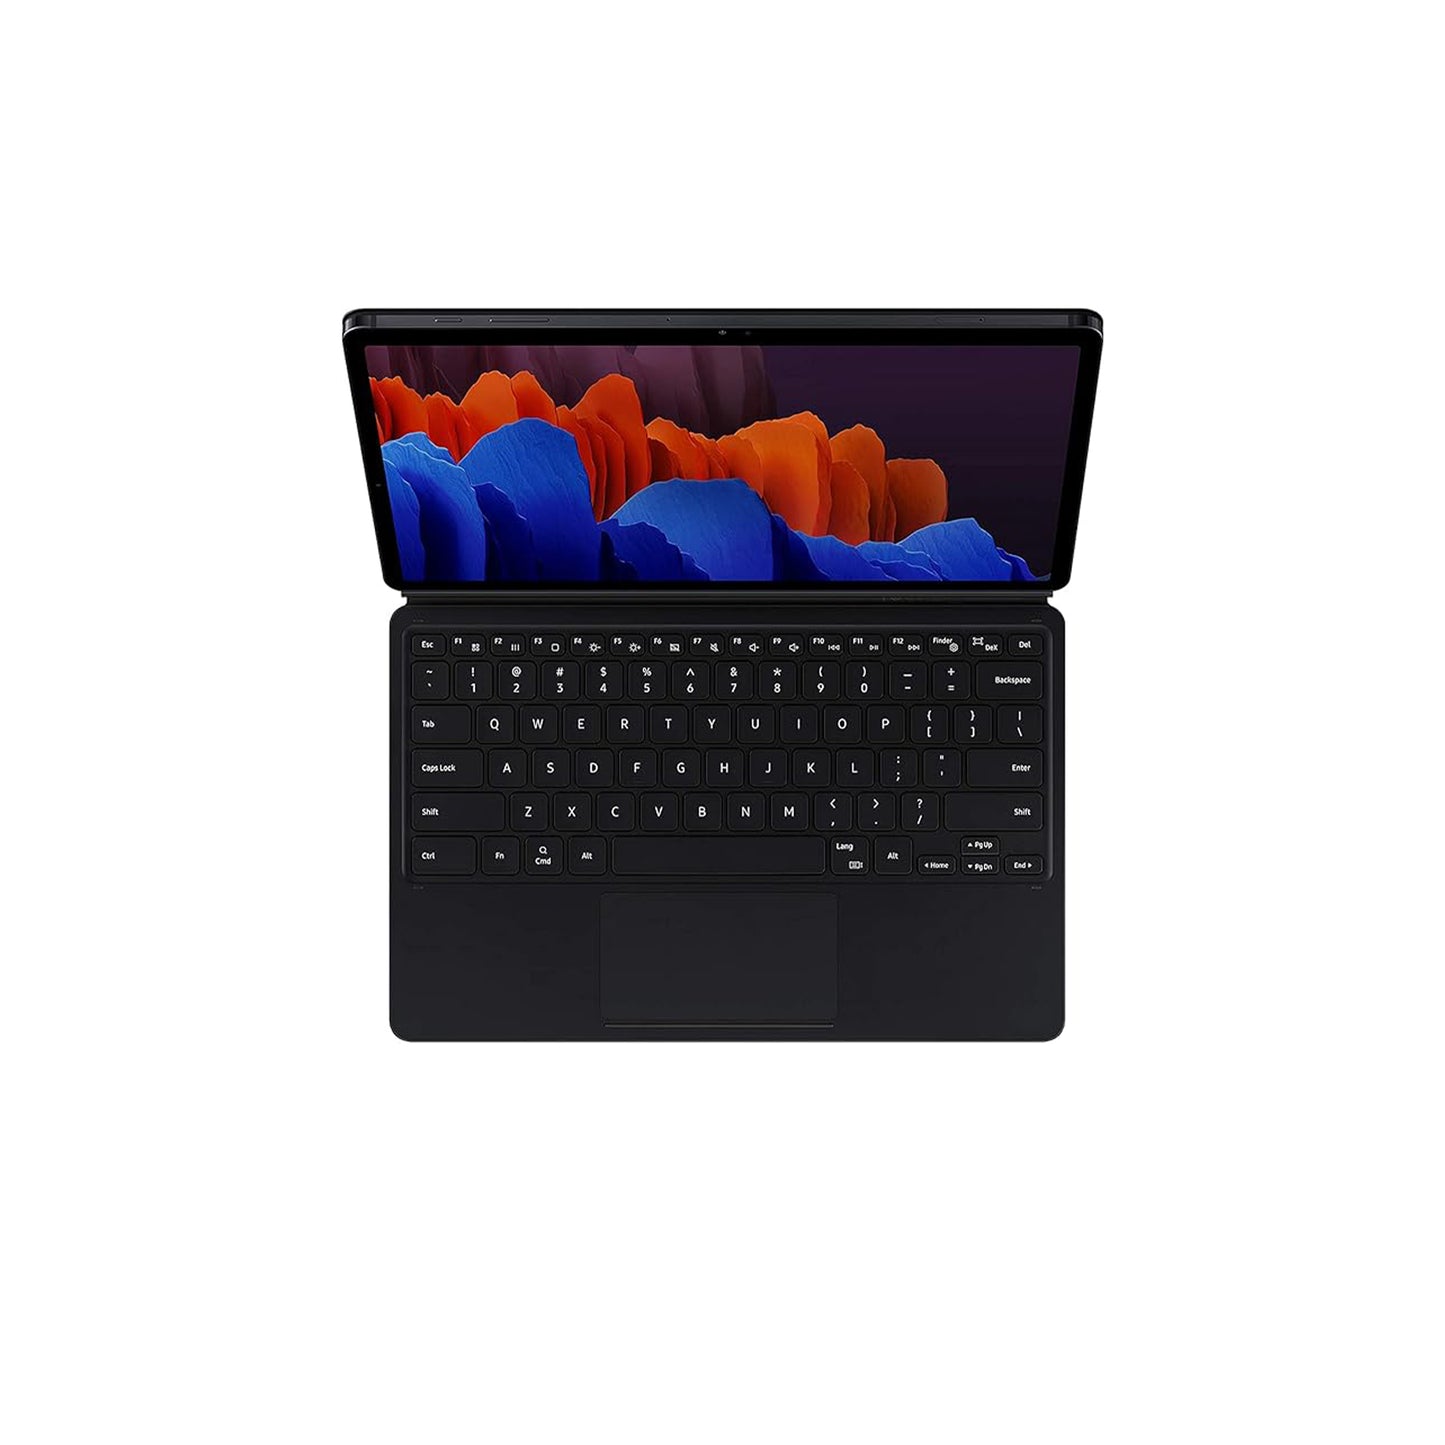 سامسونج جالاكسي تاب S7+ لوحة المفاتيح، أسود 